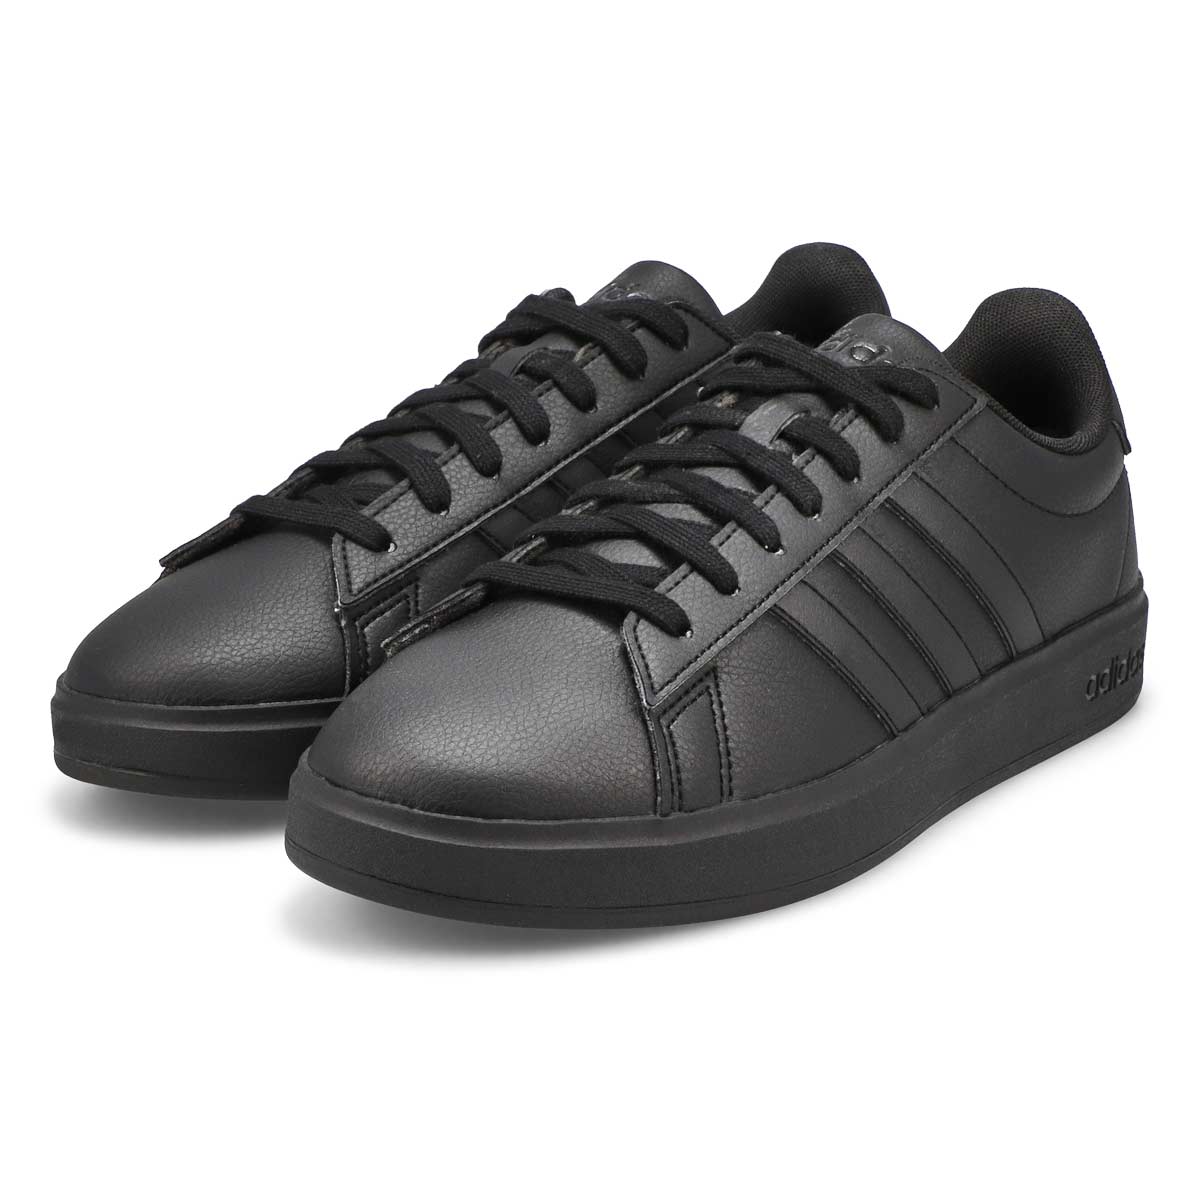 Men's Grand Court 2.0 Sneaker - Black/Black